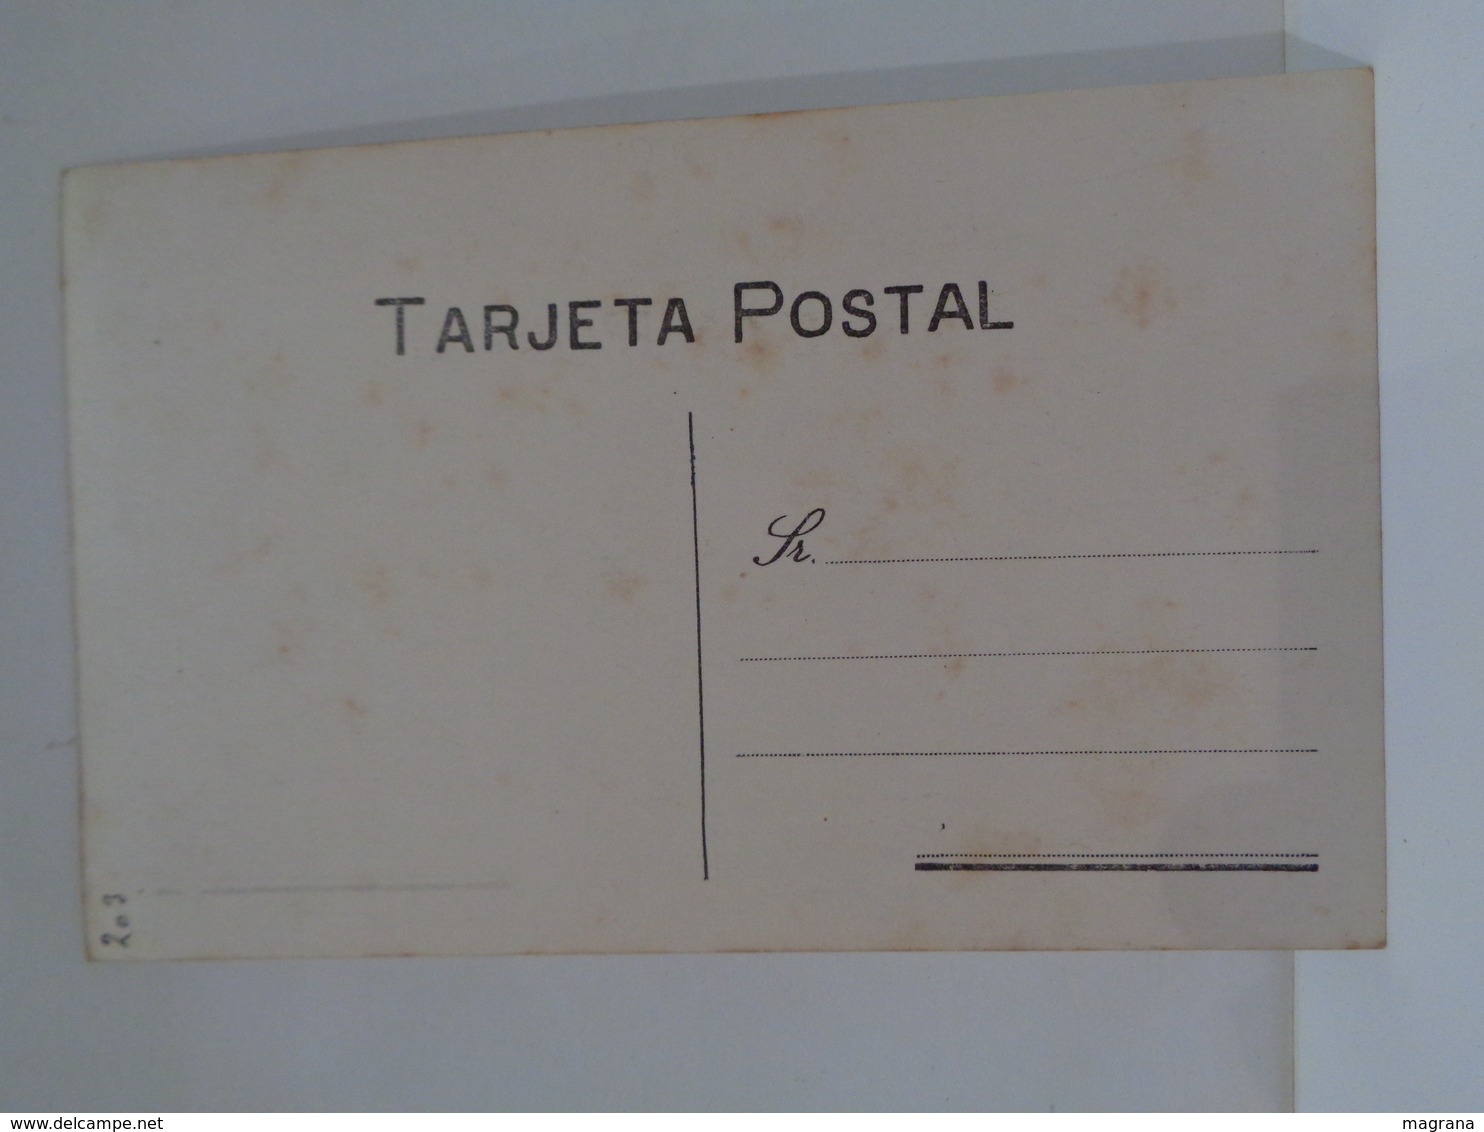 Álbum de Fotos. Finales del siglo XIX a principios siglo XX. Con 29 fotos antiguas. Tarjeta postal y carta de visita.